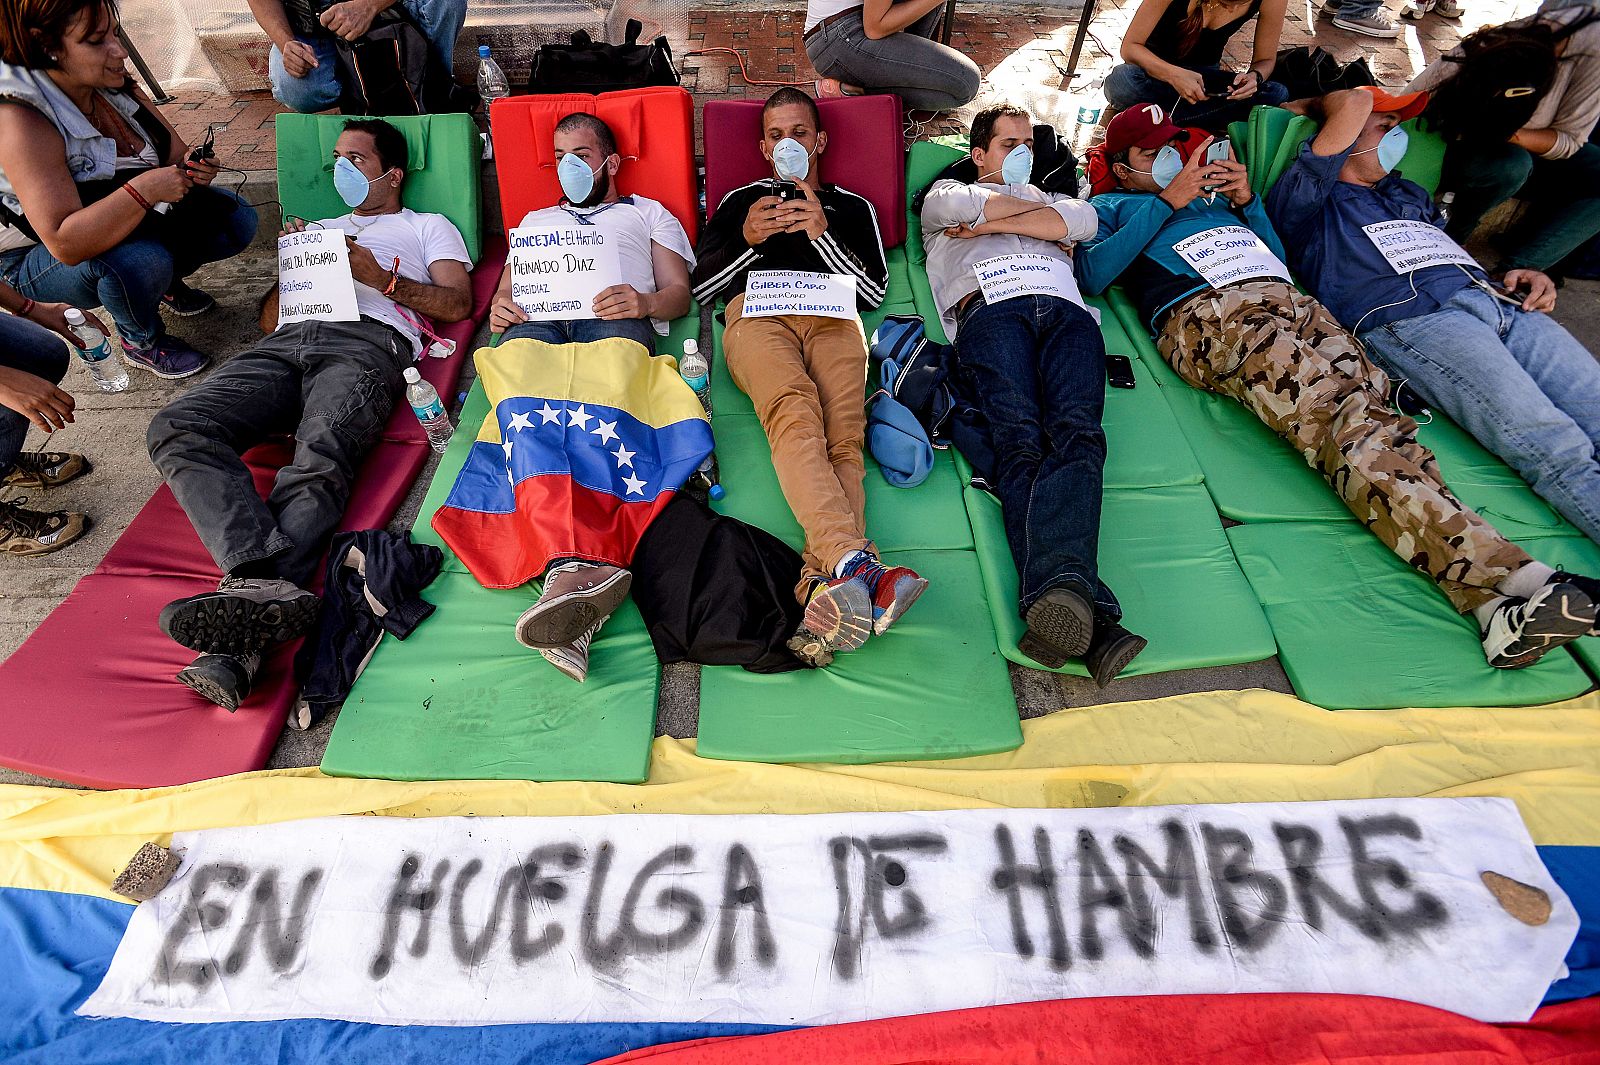 Miembros del opositor Voluntad Popular comienzan una huelga de hambre en solidaridad con los que consideran presos politicos